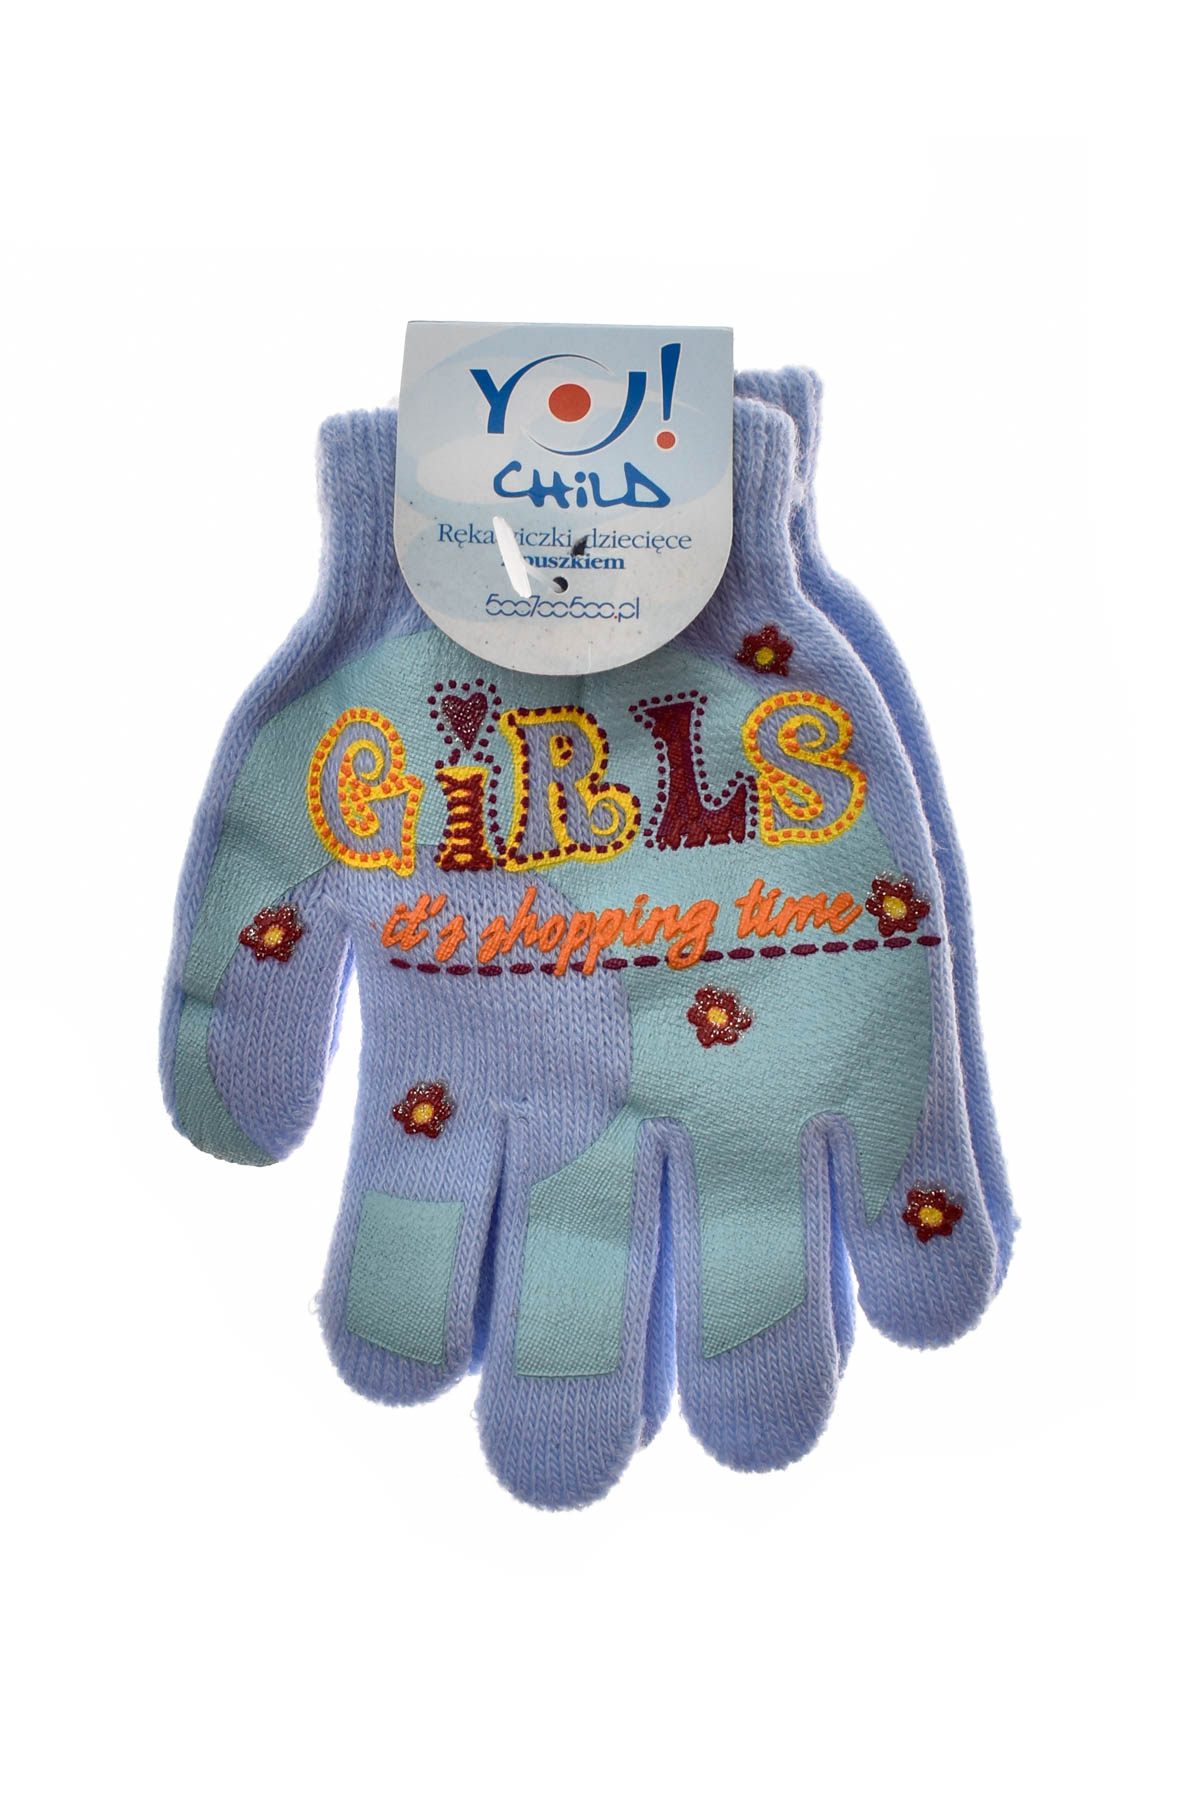 Παιδικά γάντια - Yo! club - 0